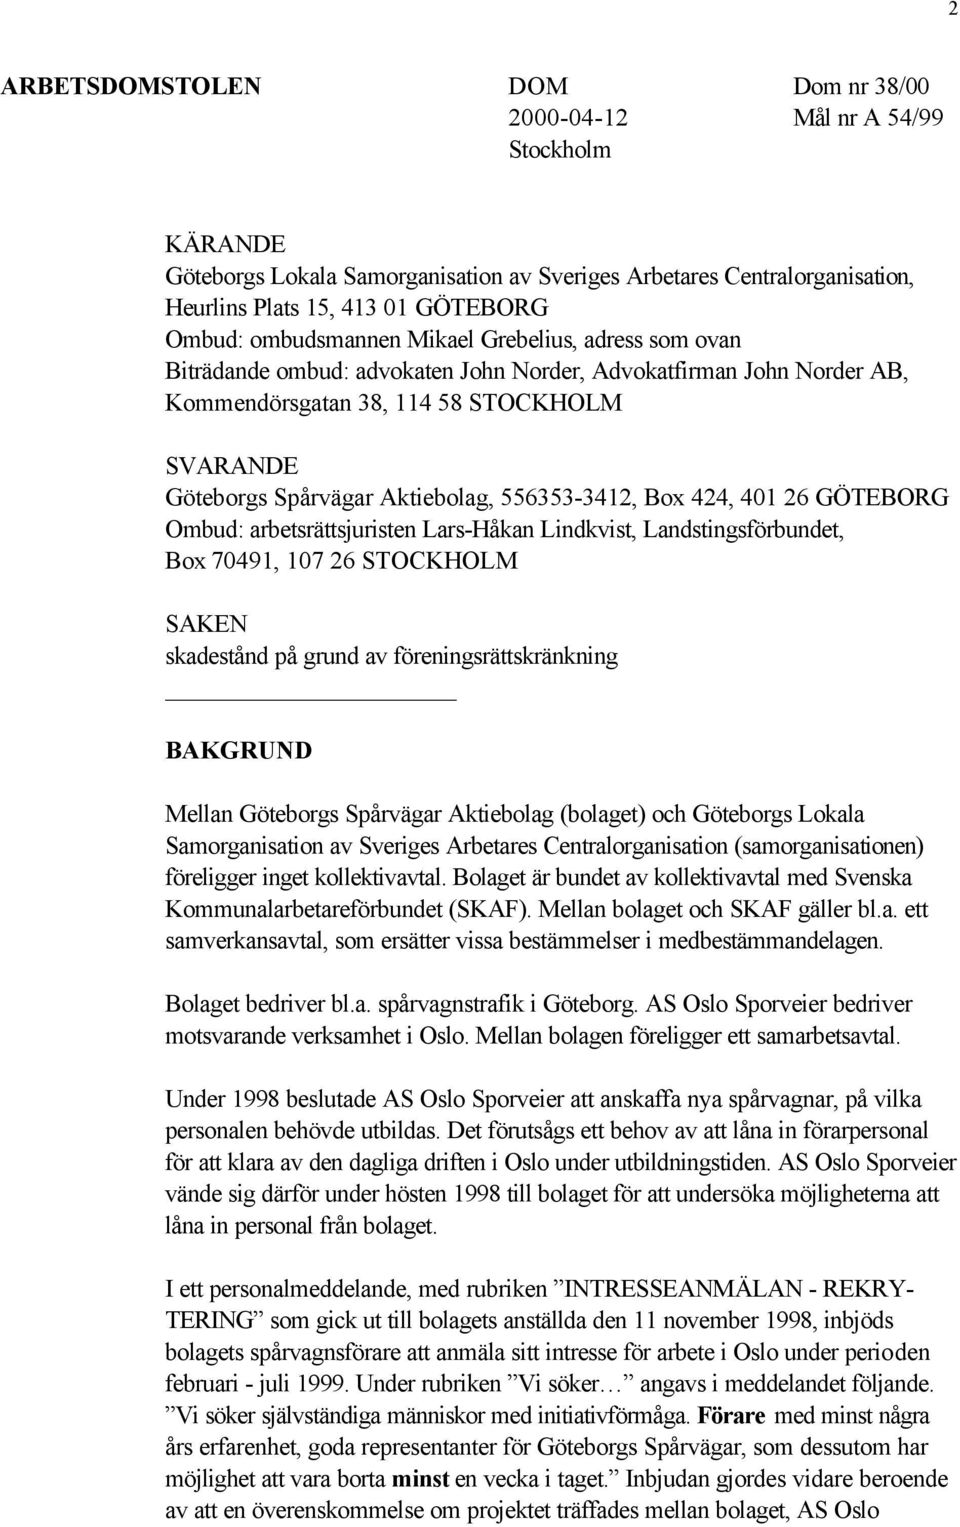 556353-3412, Box 424, 401 26 GÖTEBORG Ombud: arbetsrättsjuristen Lars-Håkan Lindkvist, Landstingsförbundet, Box 70491, 107 26 STOCKHOLM SAKEN skadestånd på grund av föreningsrättskränkning BAKGRUND